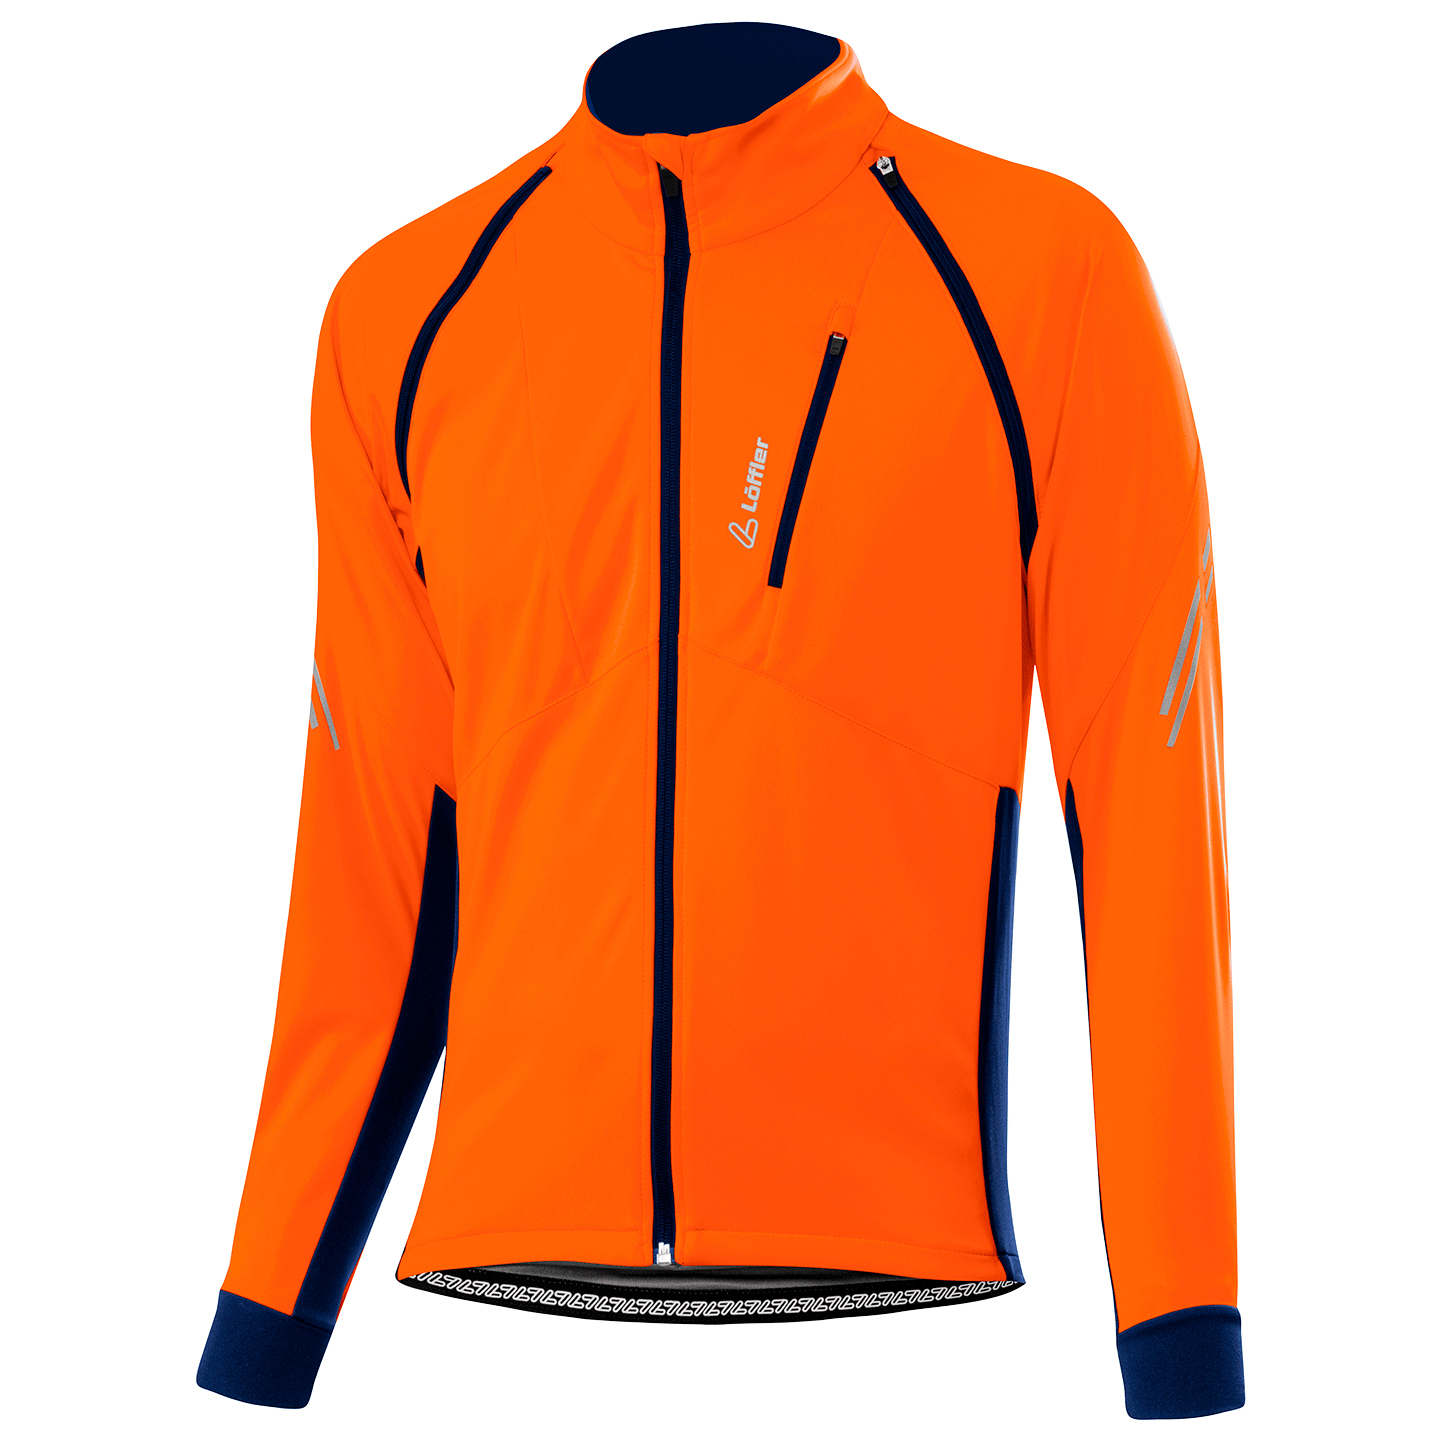 Велосипедная куртка Löffler Bike Zip Off San Remo 2 Windstopper Light, оранжевый